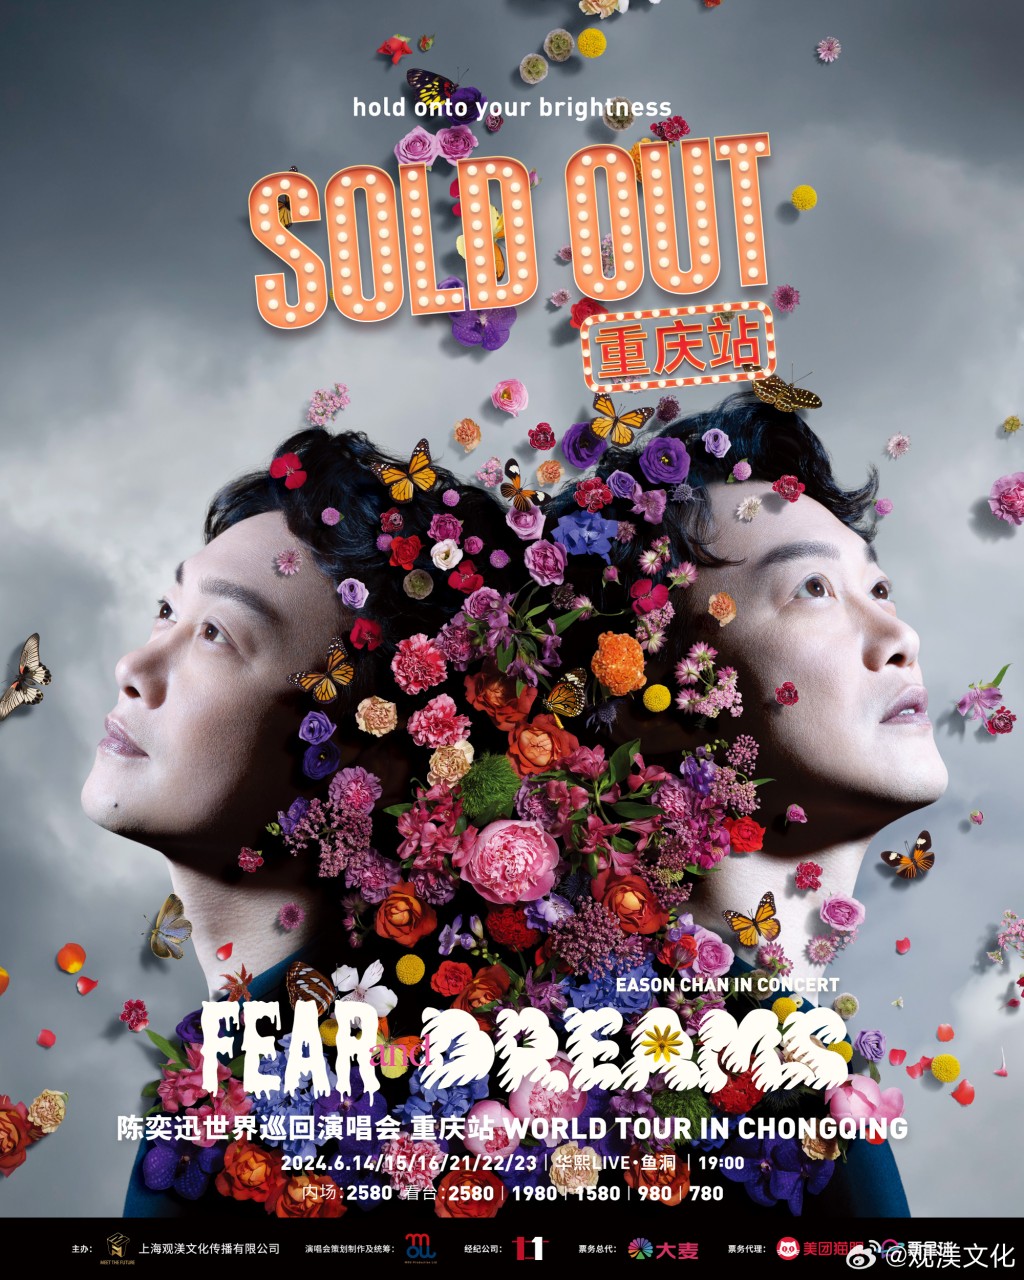 陳奕迅原定周五（14日）於重慶舉行六場《Fear and Dreams世界巡迴演唱會》。